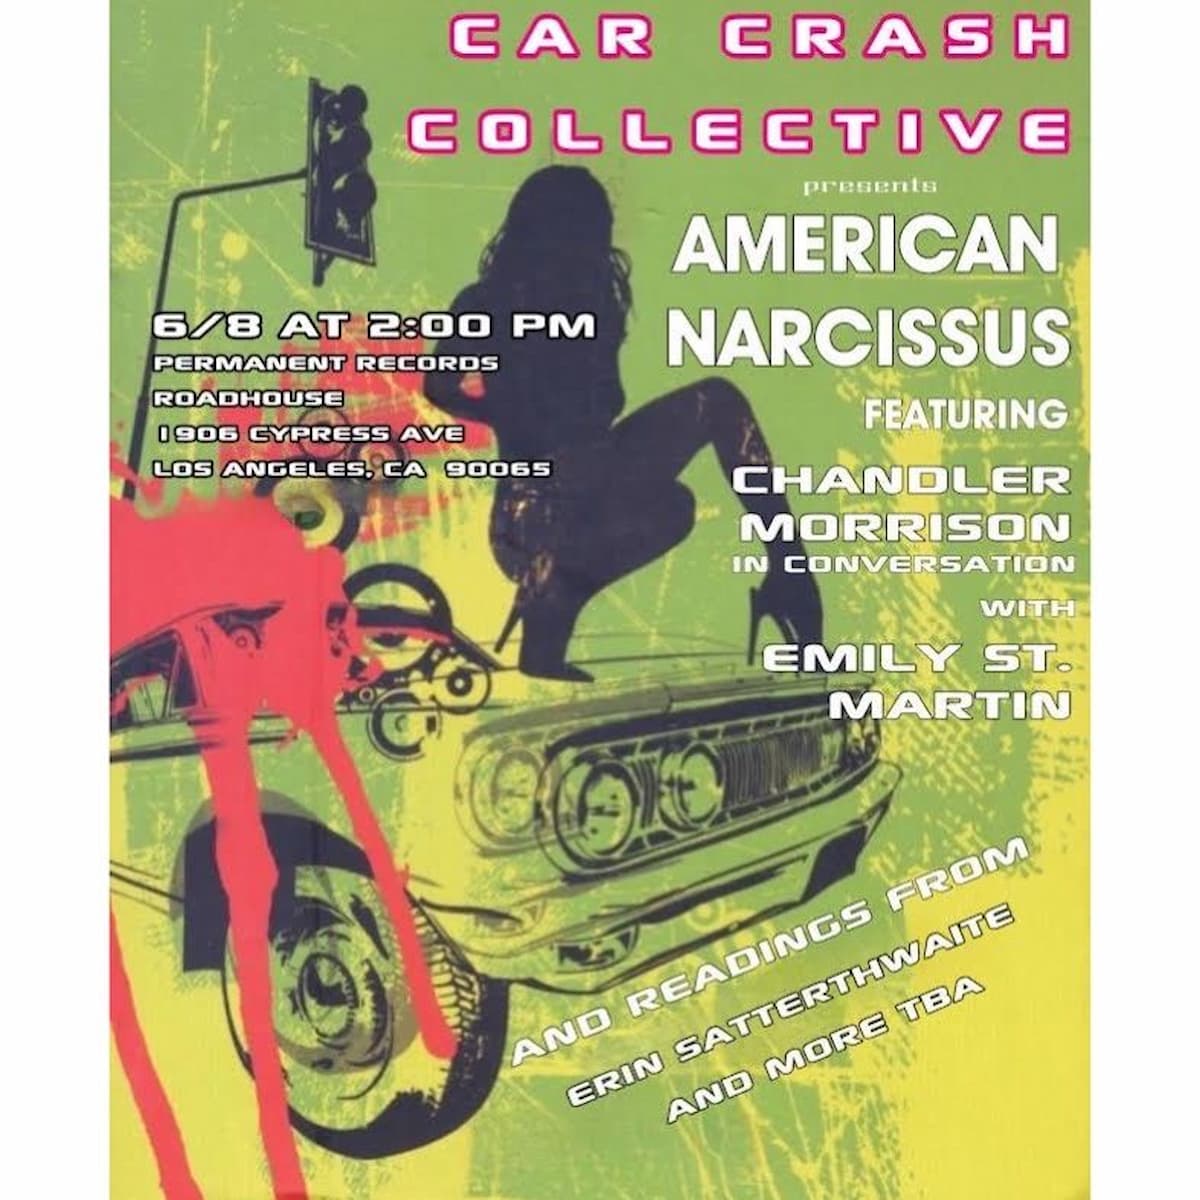 Car Crash Collective presents American Narcissus